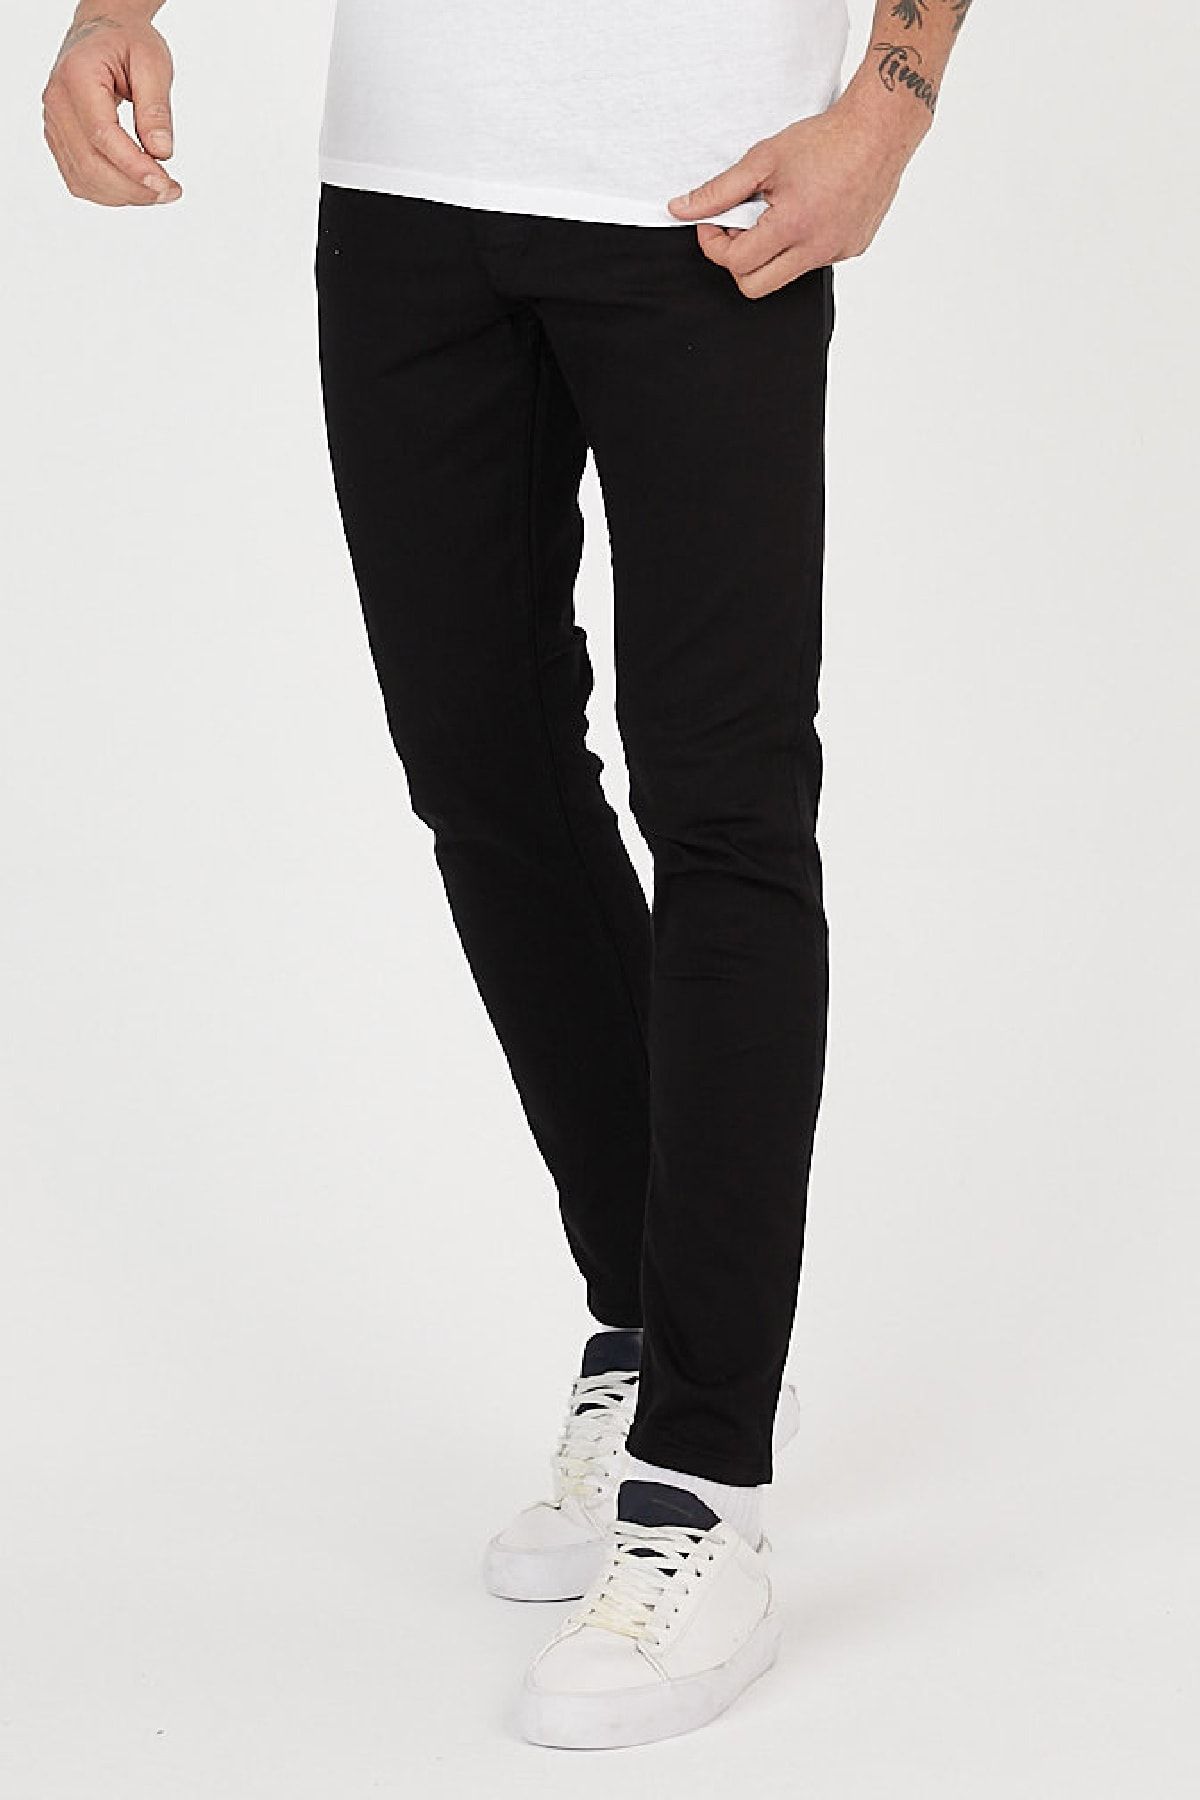 Serseri Jeans Siyah Renk Slim Fit Likralı Esnek Pantolon